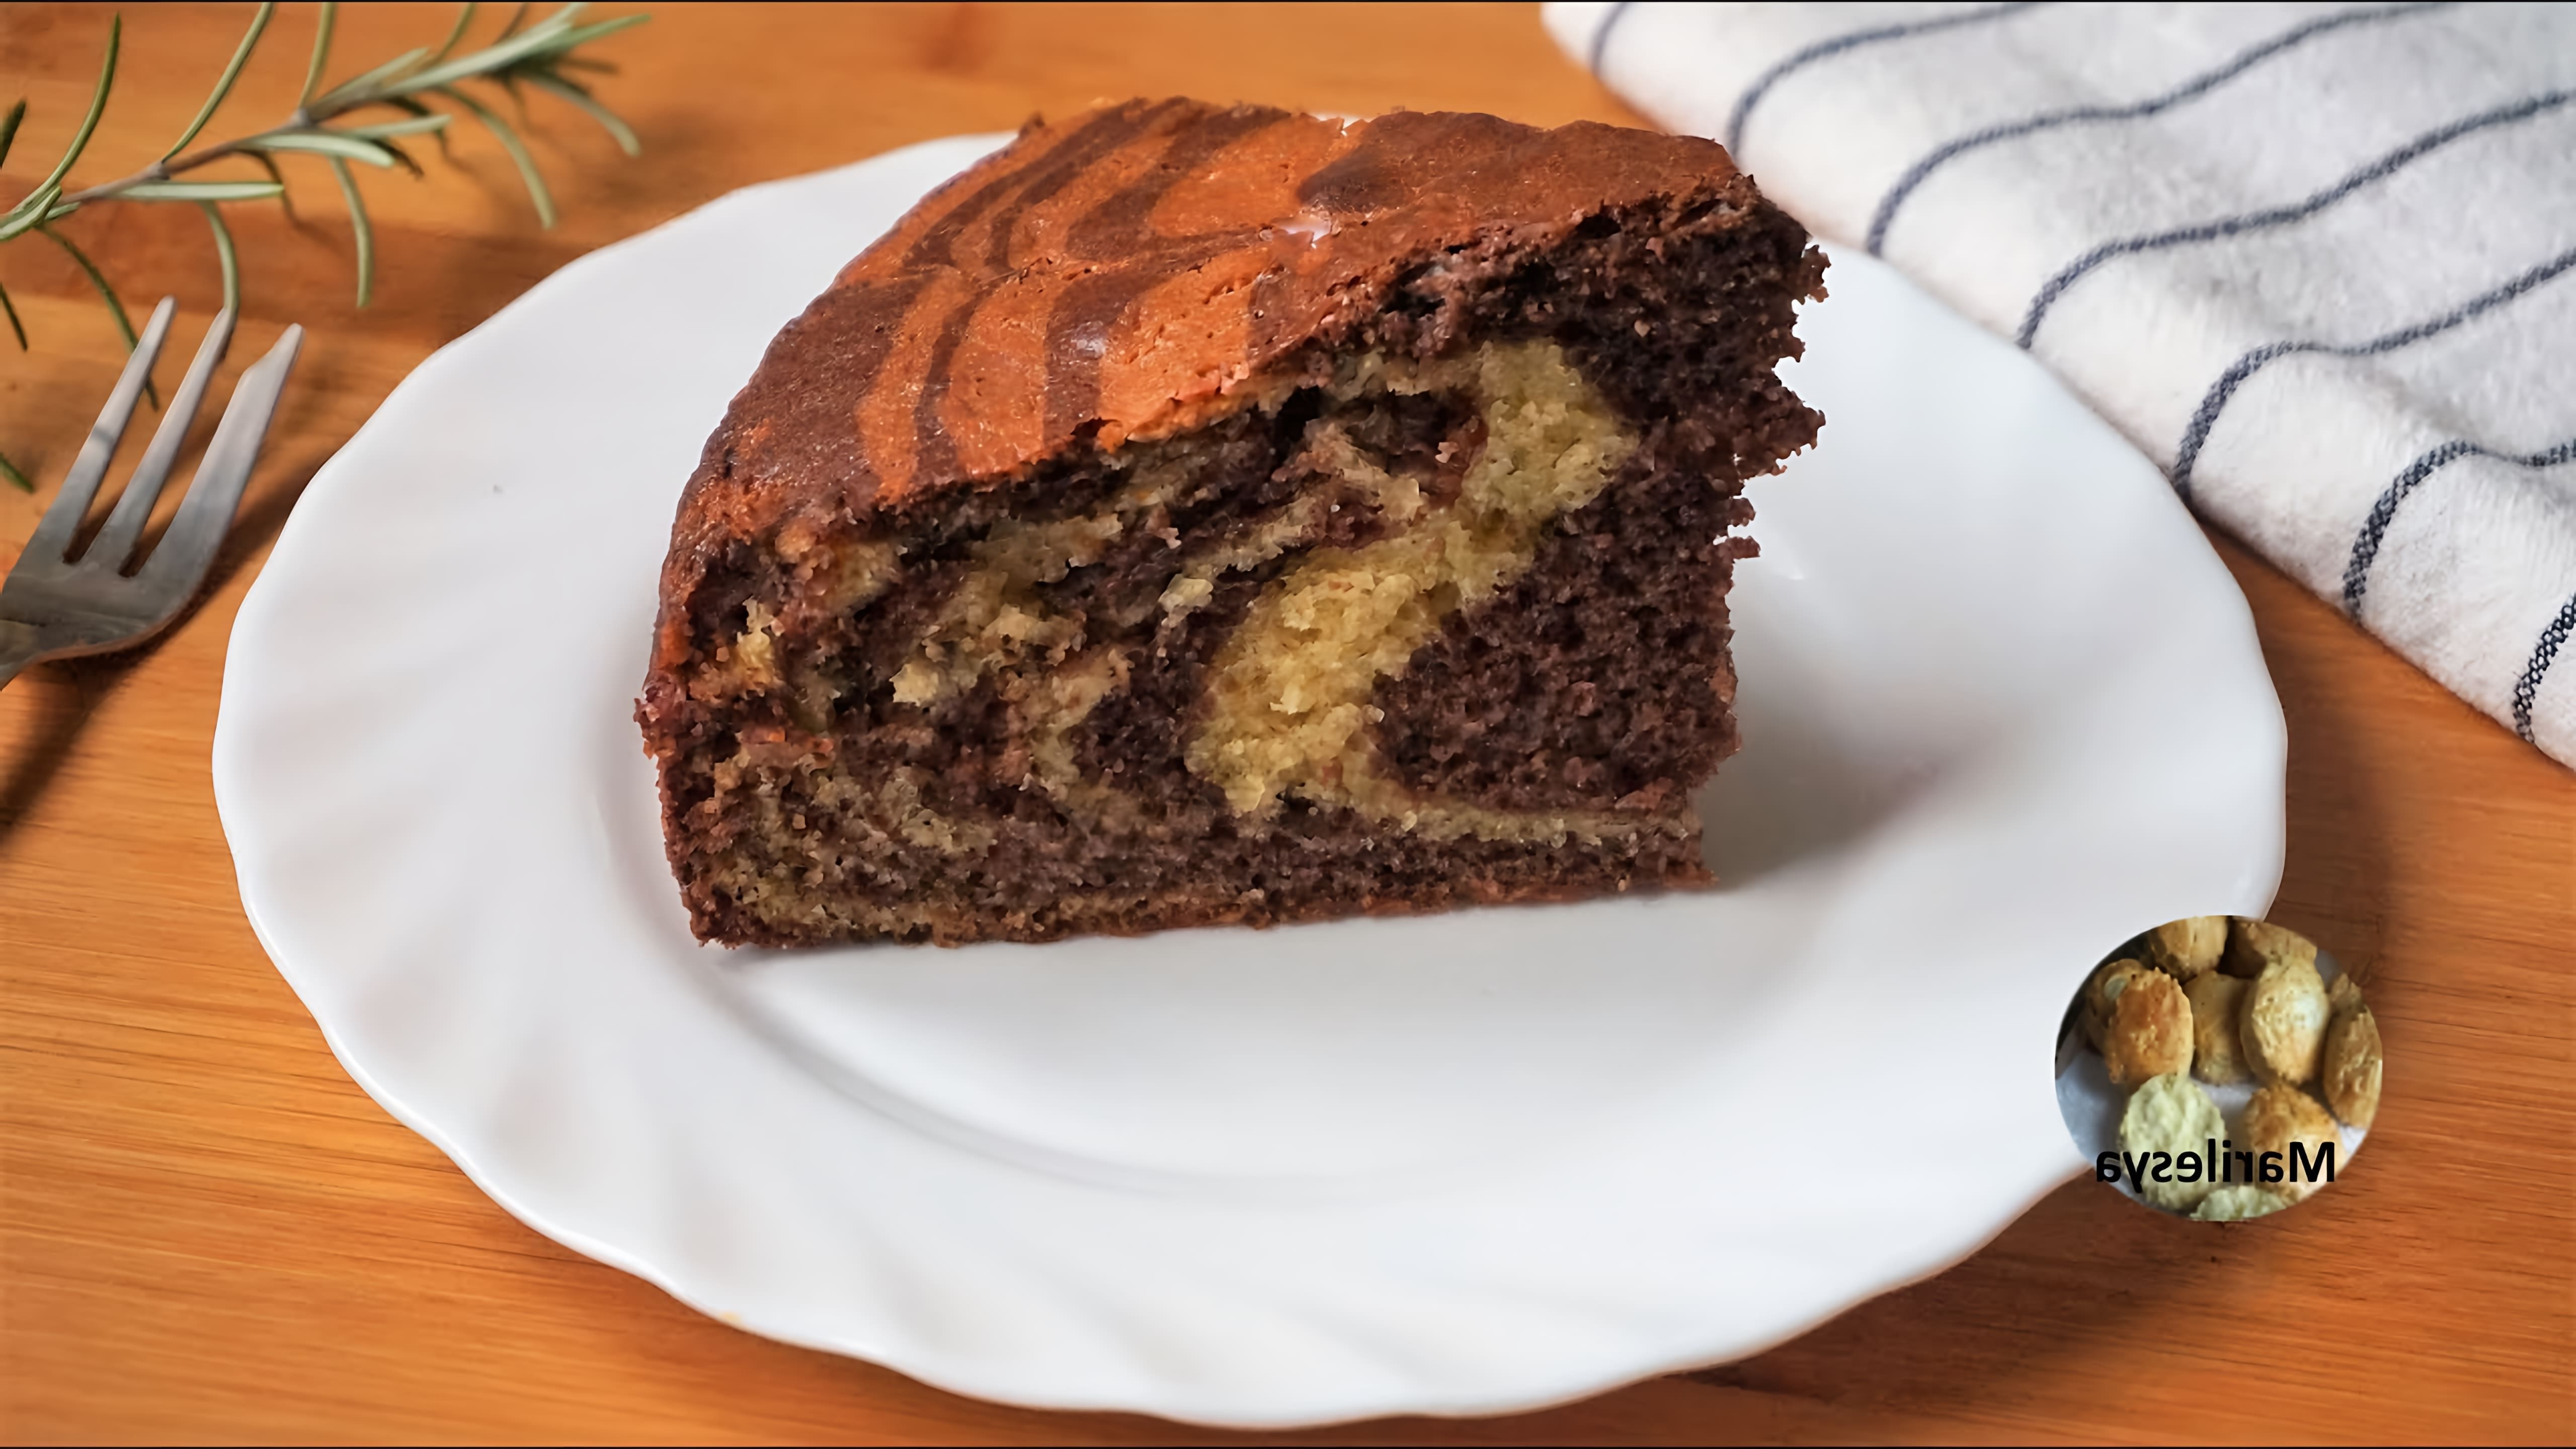 В этом видео демонстрируется рецепт приготовления пирога "Зебра", который был популярен в советские времена